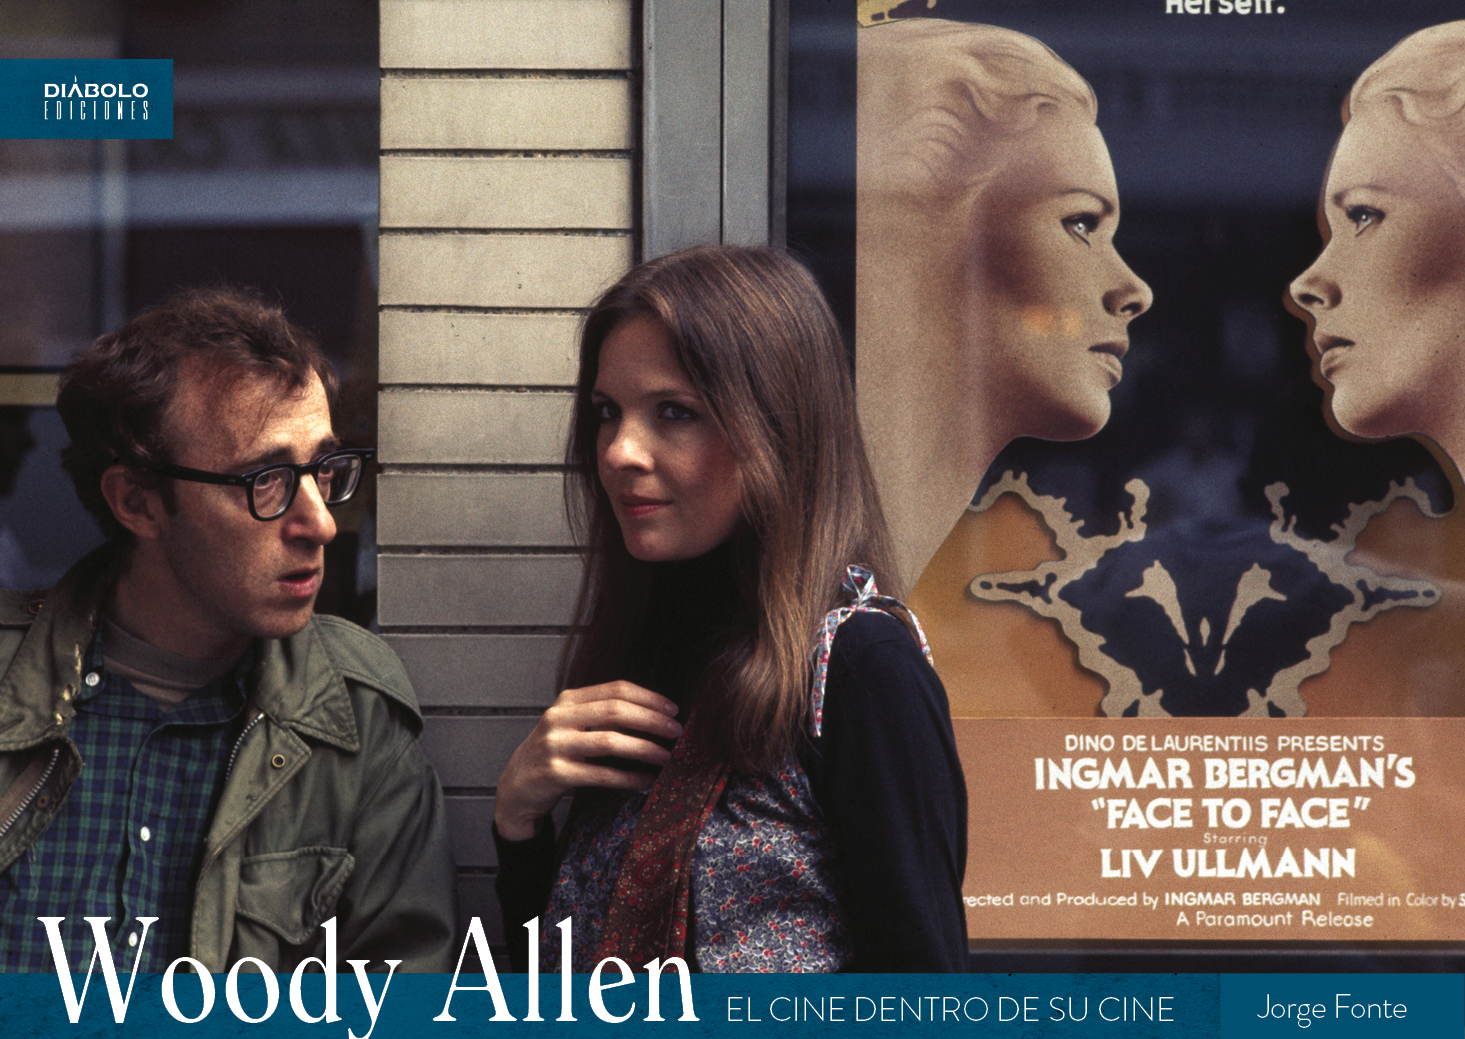 Jorge Fonte presenta su cuarto libro sobre Woody Allen